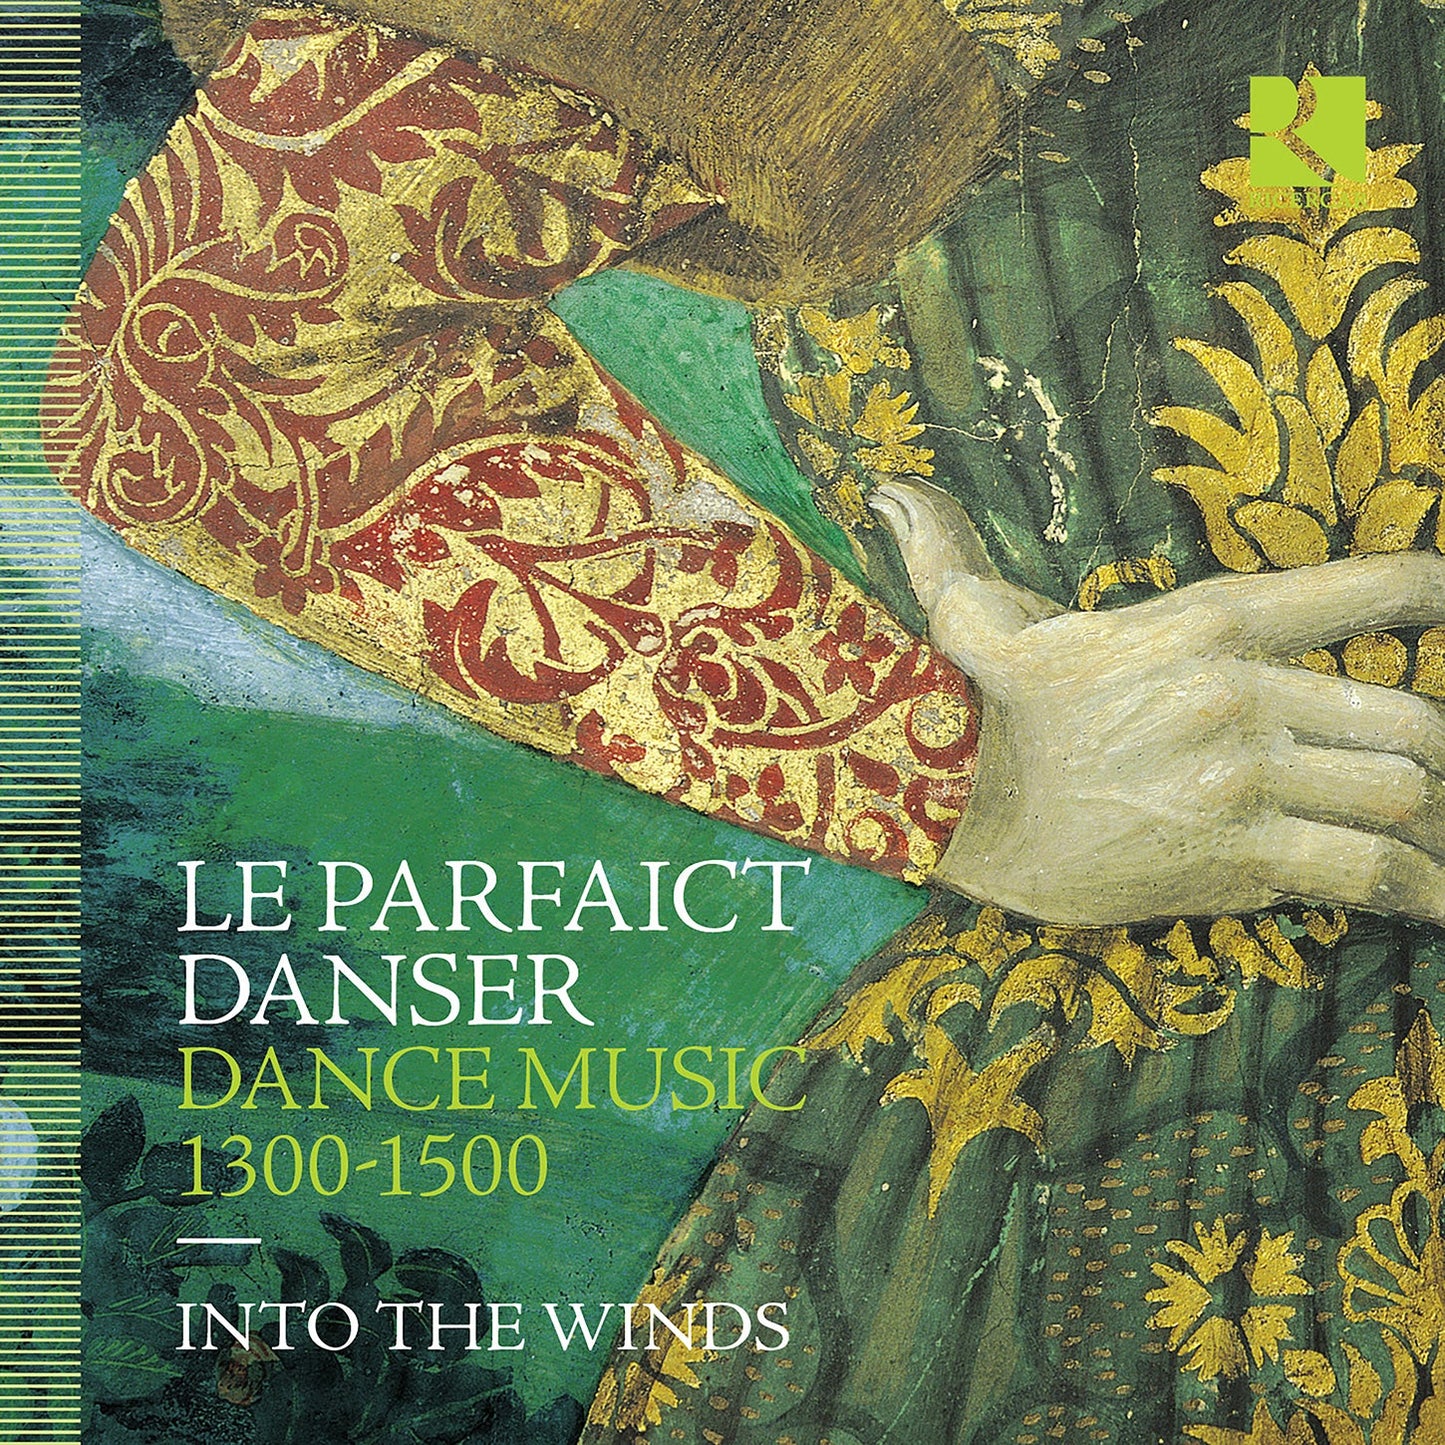 Le Parfaict Danser - Dance Music, 1300-1500